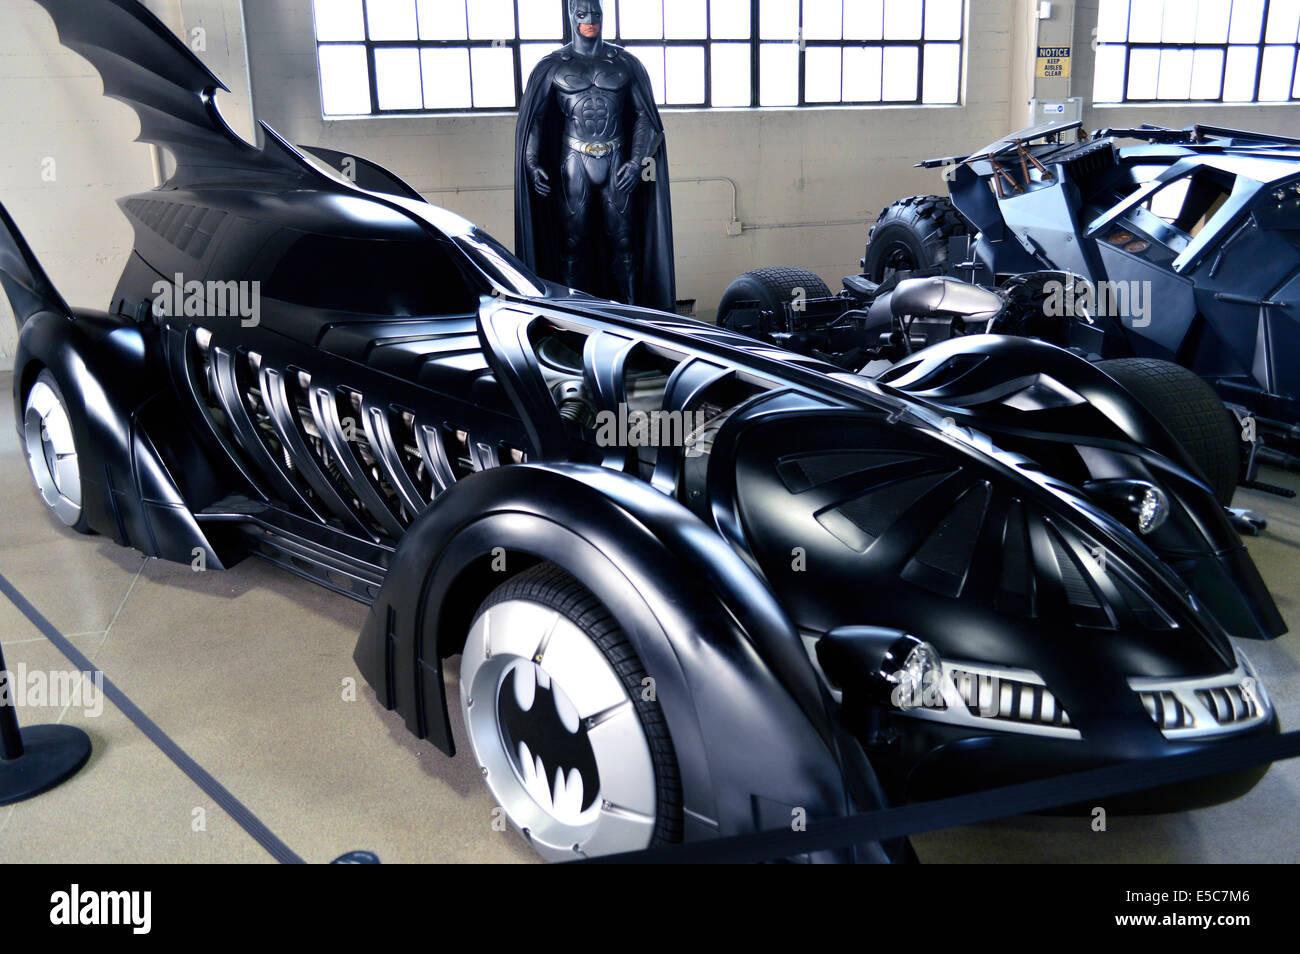 Voiture de la franchise film Batman à la Warner Bros Studio à Burbank, Los Angeles. Banque D'Images